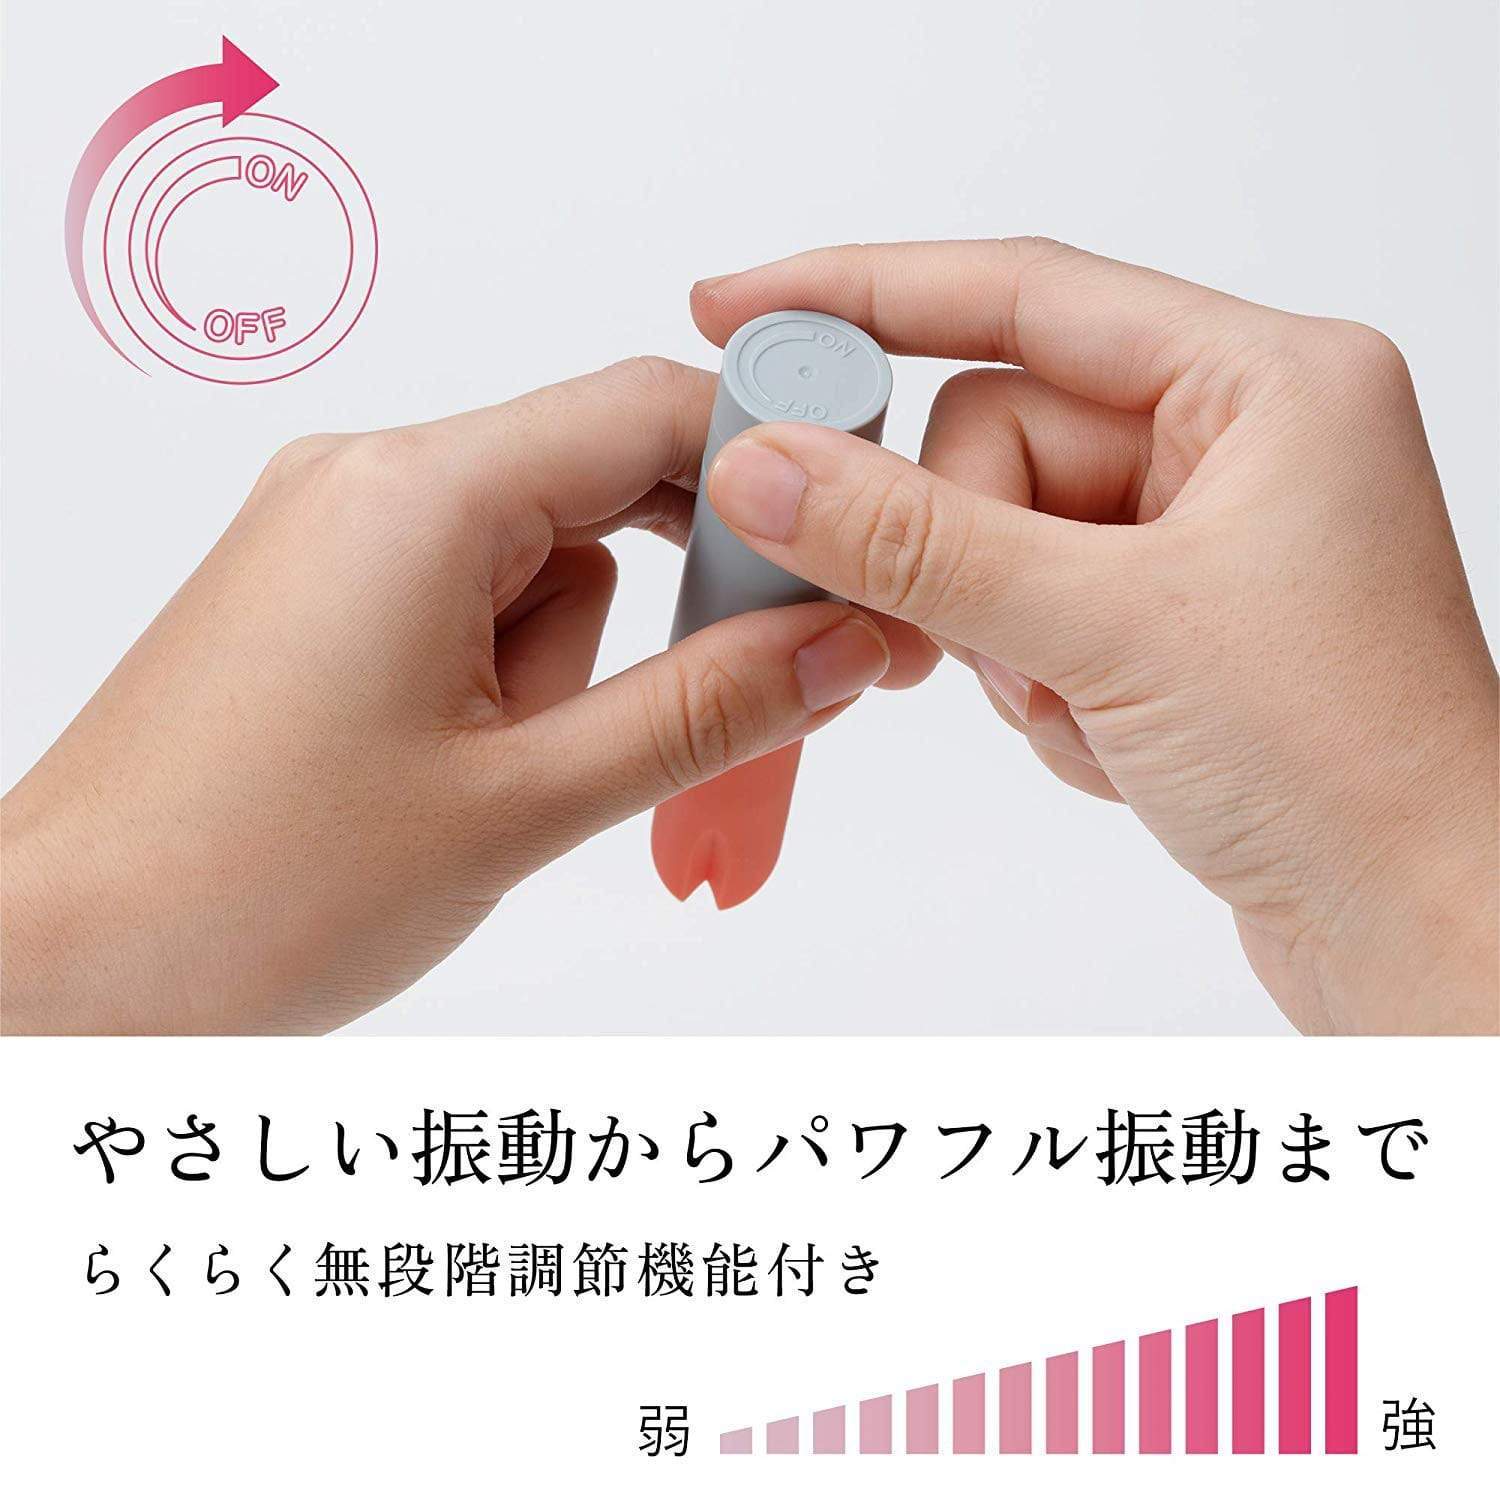 Tenga - Iroha Stick Discreet Vibrator (White/Pink) -  Discreet Toys  Durio.sg